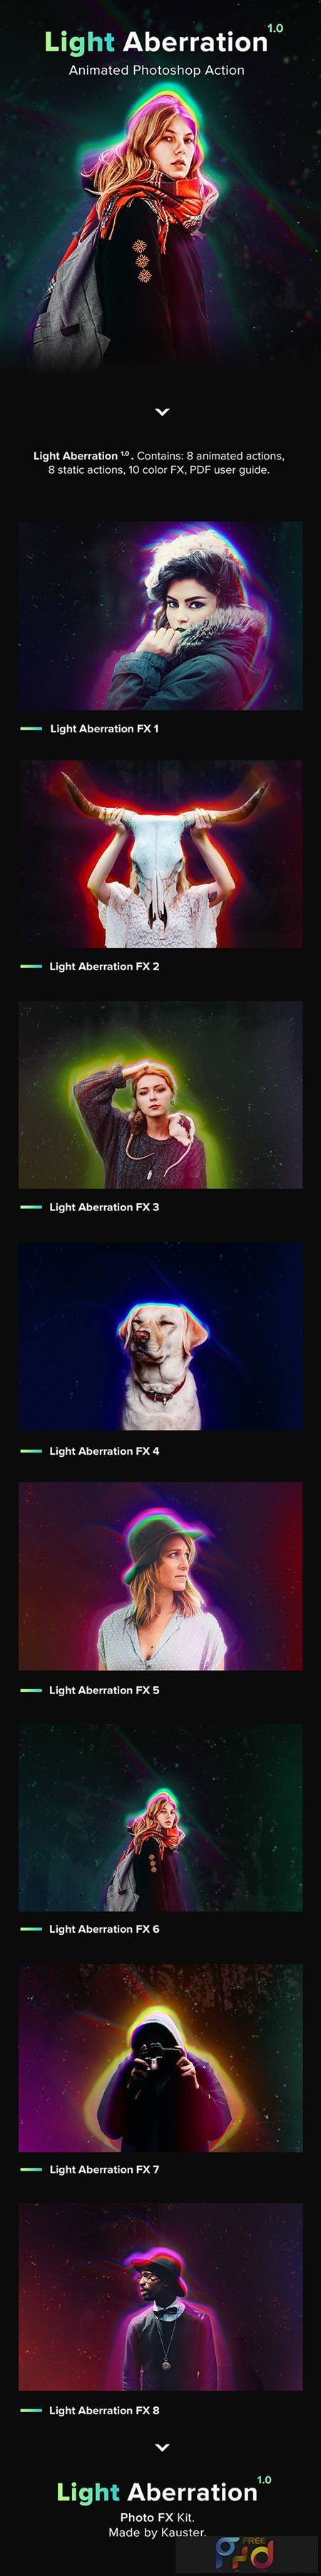 Animated Light Aberration   Photoshop Action